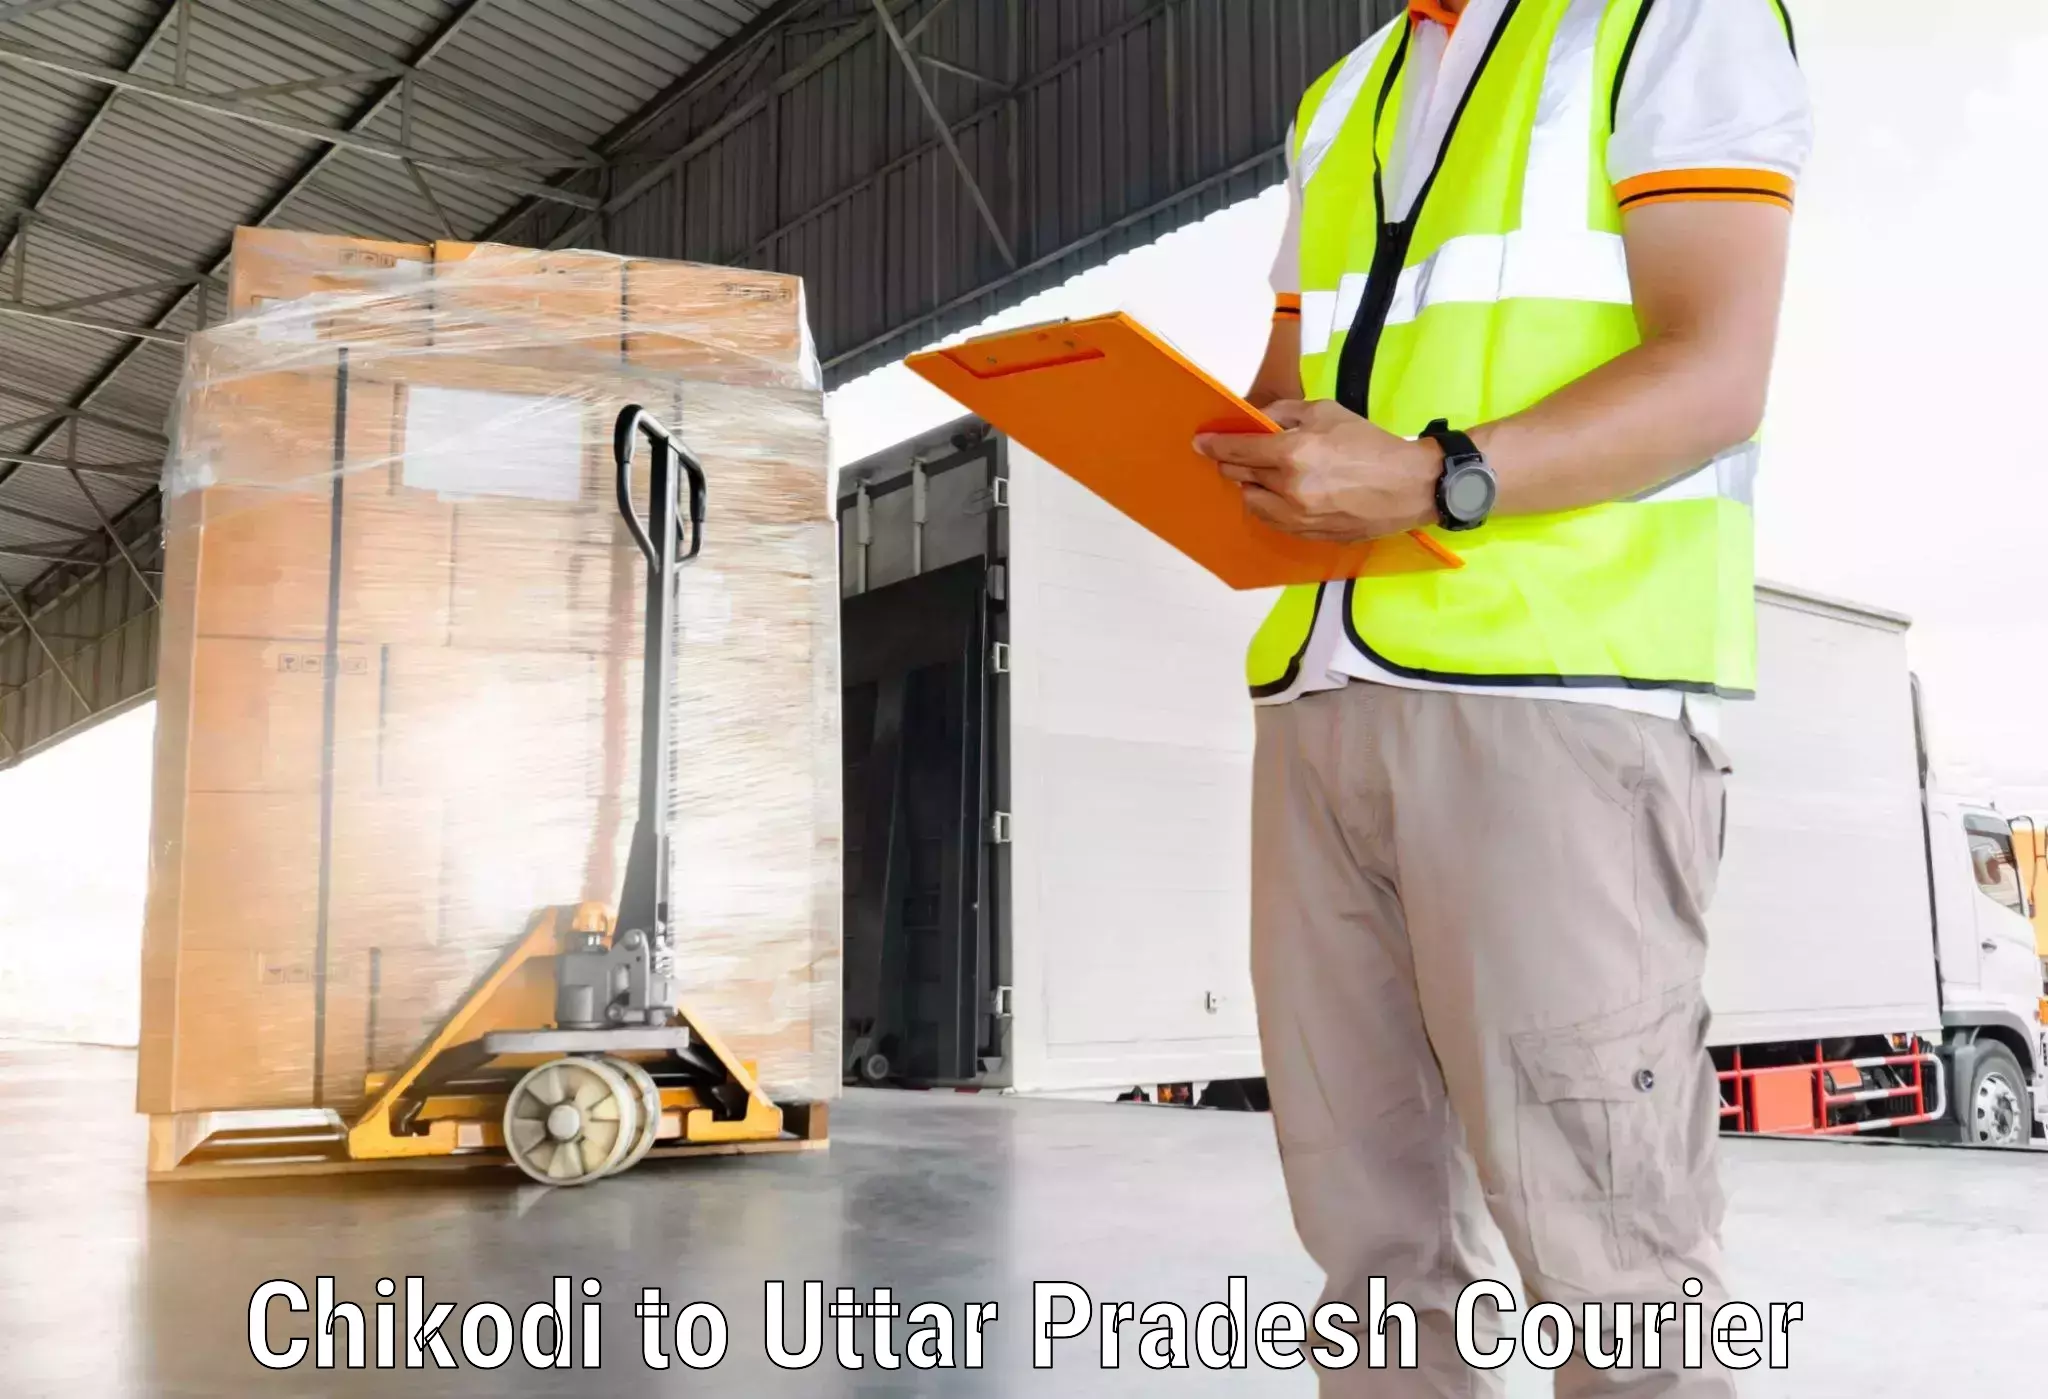 Fast delivery service Chikodi to Dadri